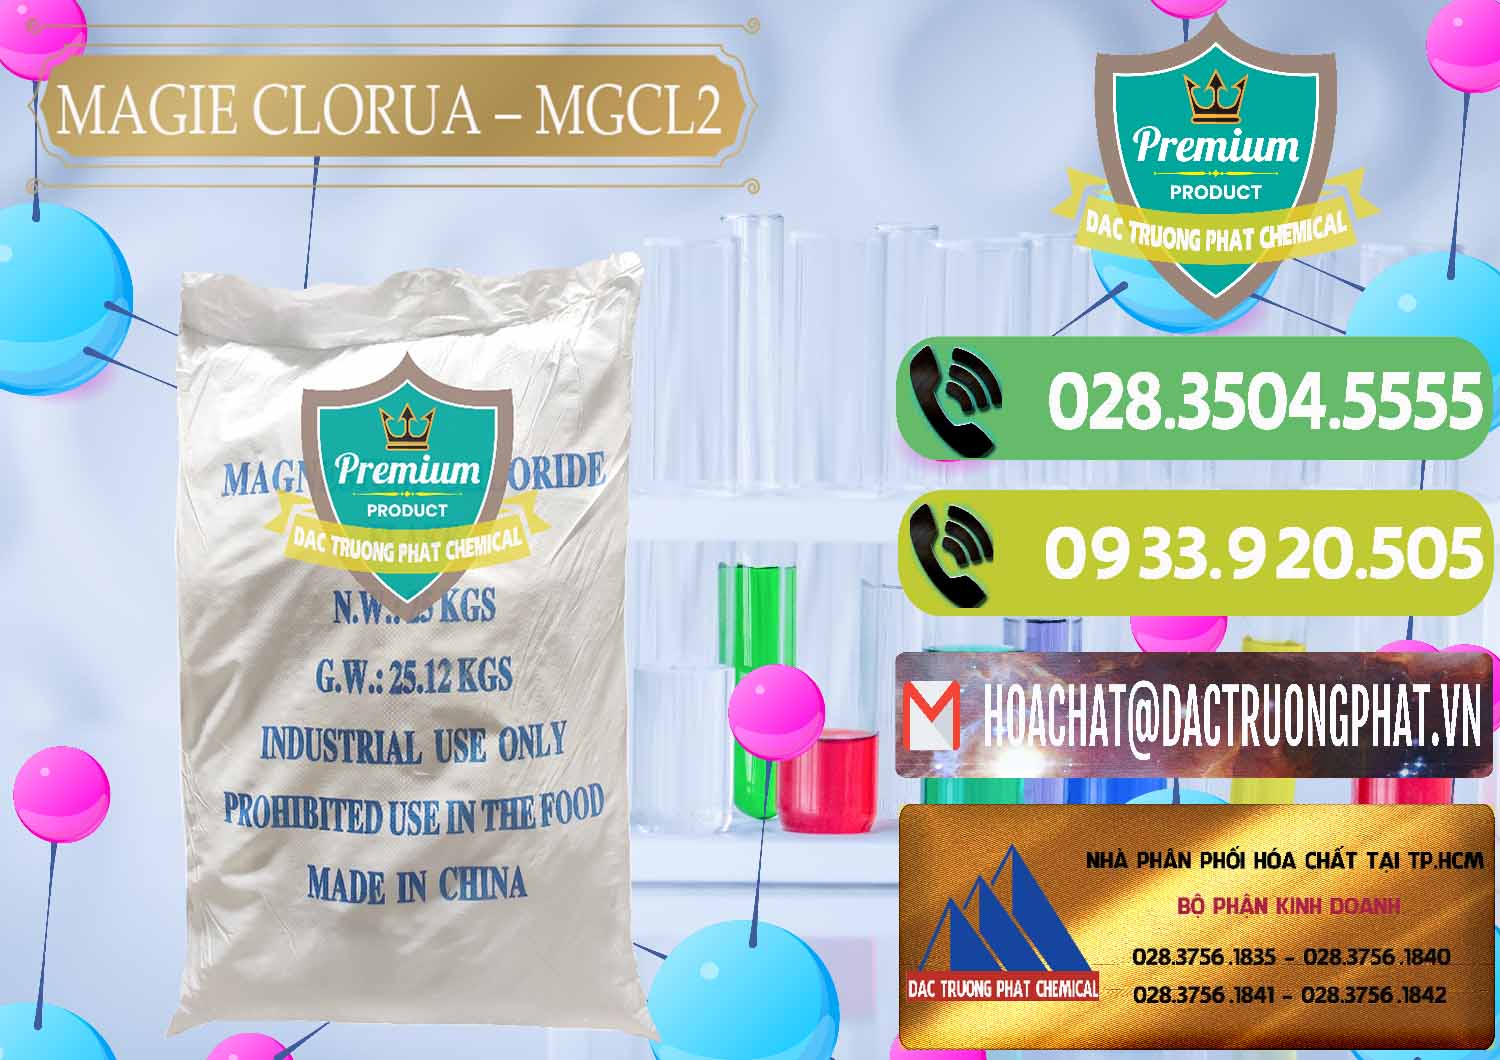 Đơn vị bán _ cung cấp Magie Clorua – MGCL2 96% Dạng Vảy Trung Quốc China - 0091 - Kinh doanh - phân phối hóa chất tại TP.HCM - hoachatmientay.vn